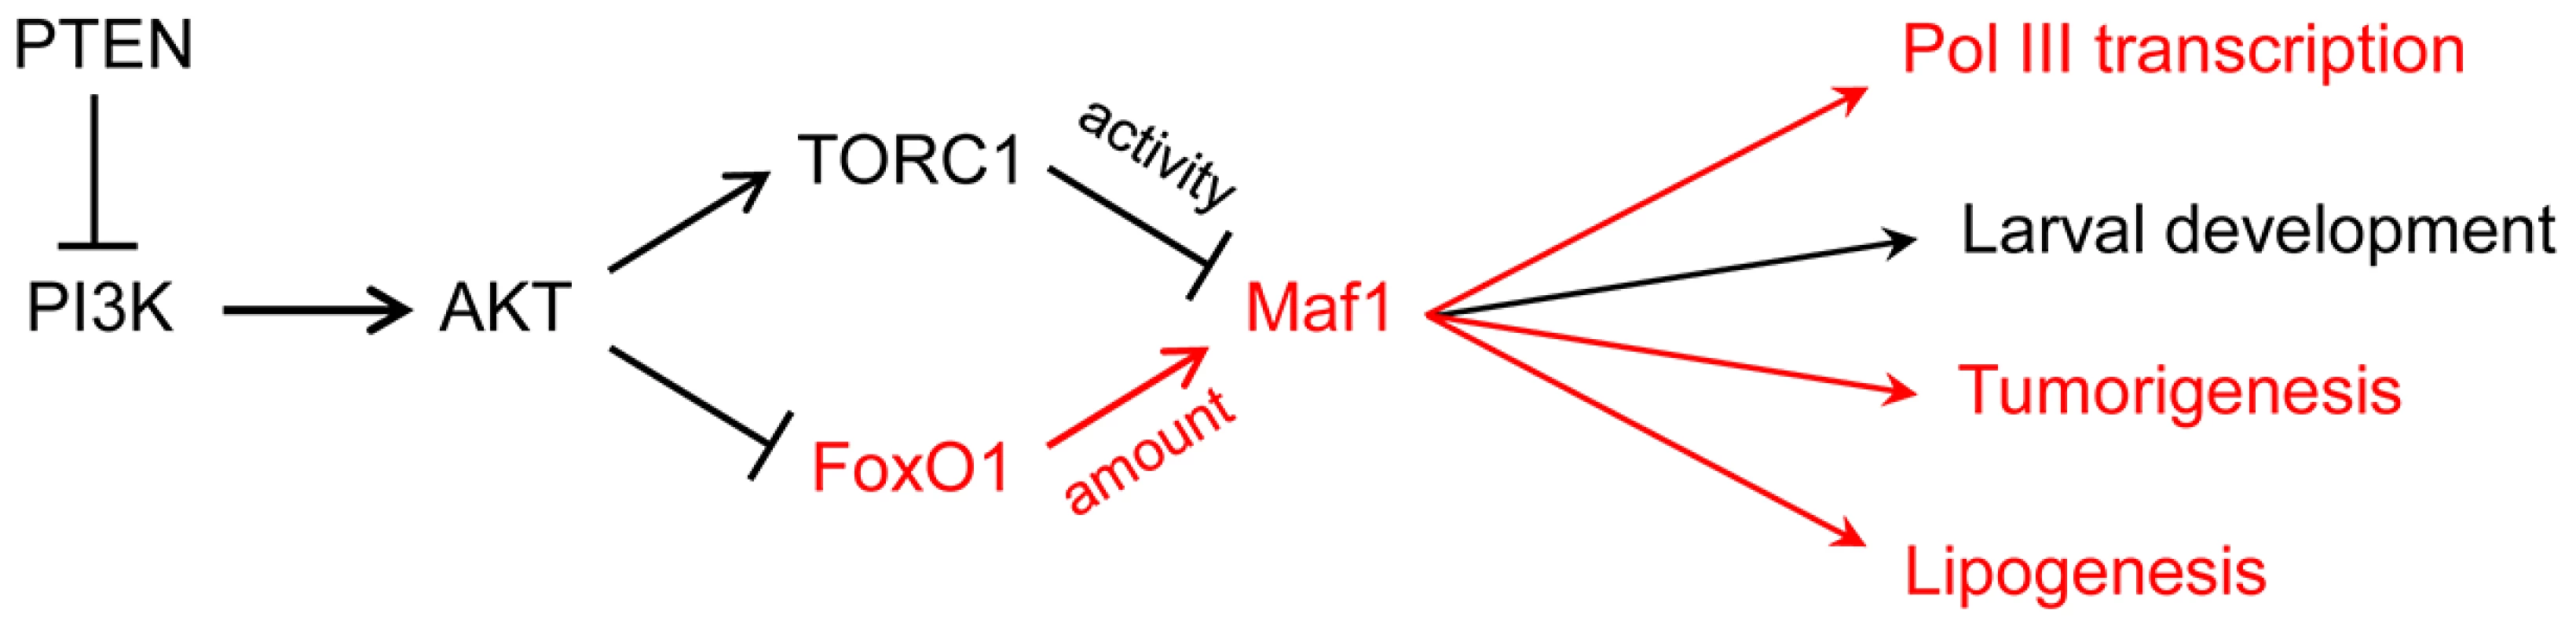 PI3K signaling via FoxO1 regulates Maf1 abundance and downstream processes.